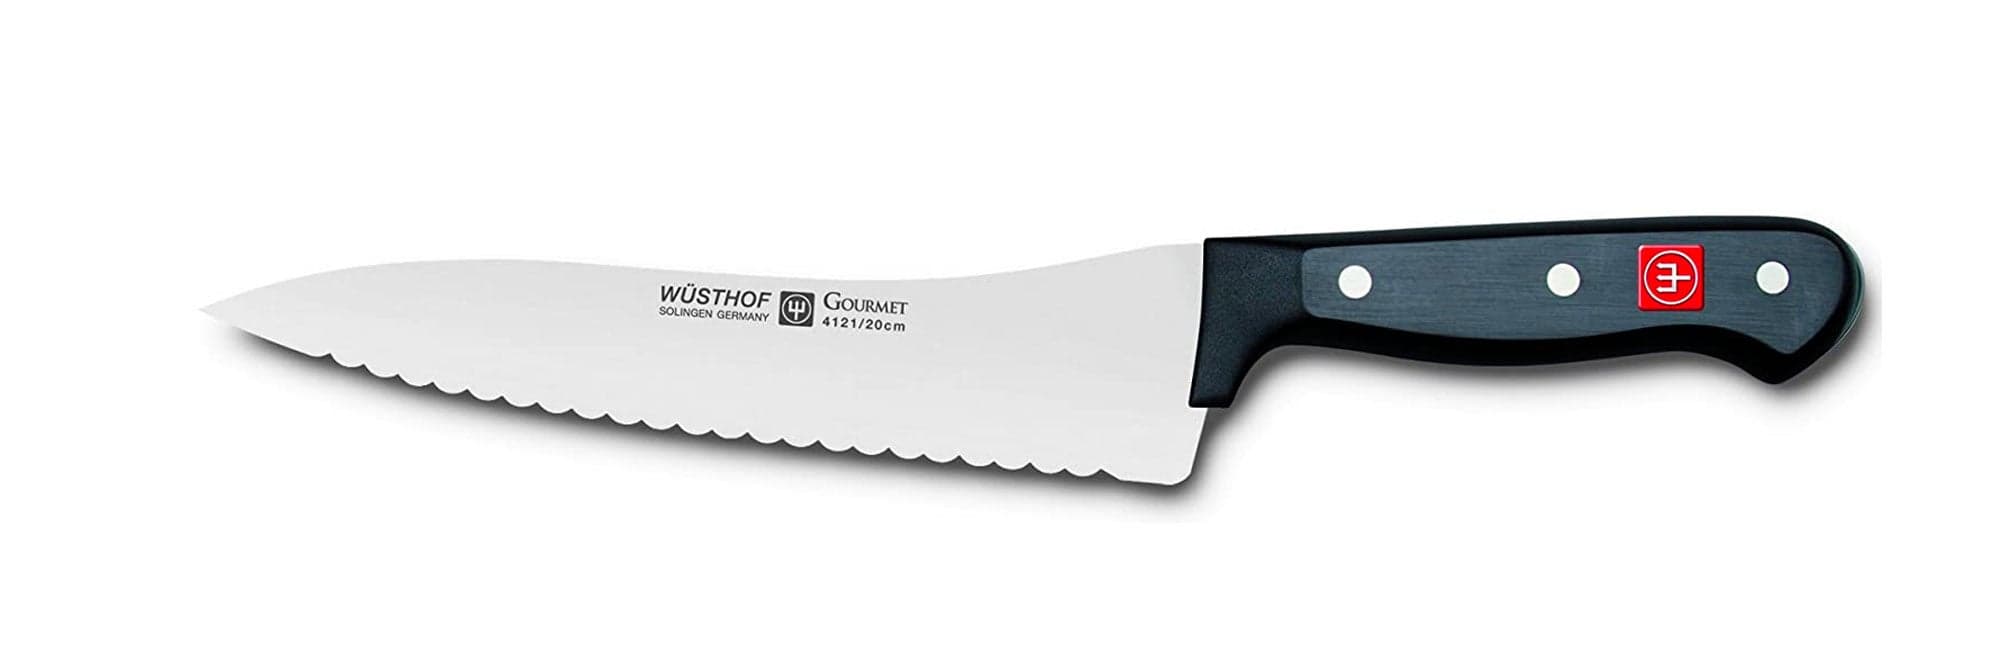 WÜSTHOF Gourmet 8 Inch Offset Deli Knife